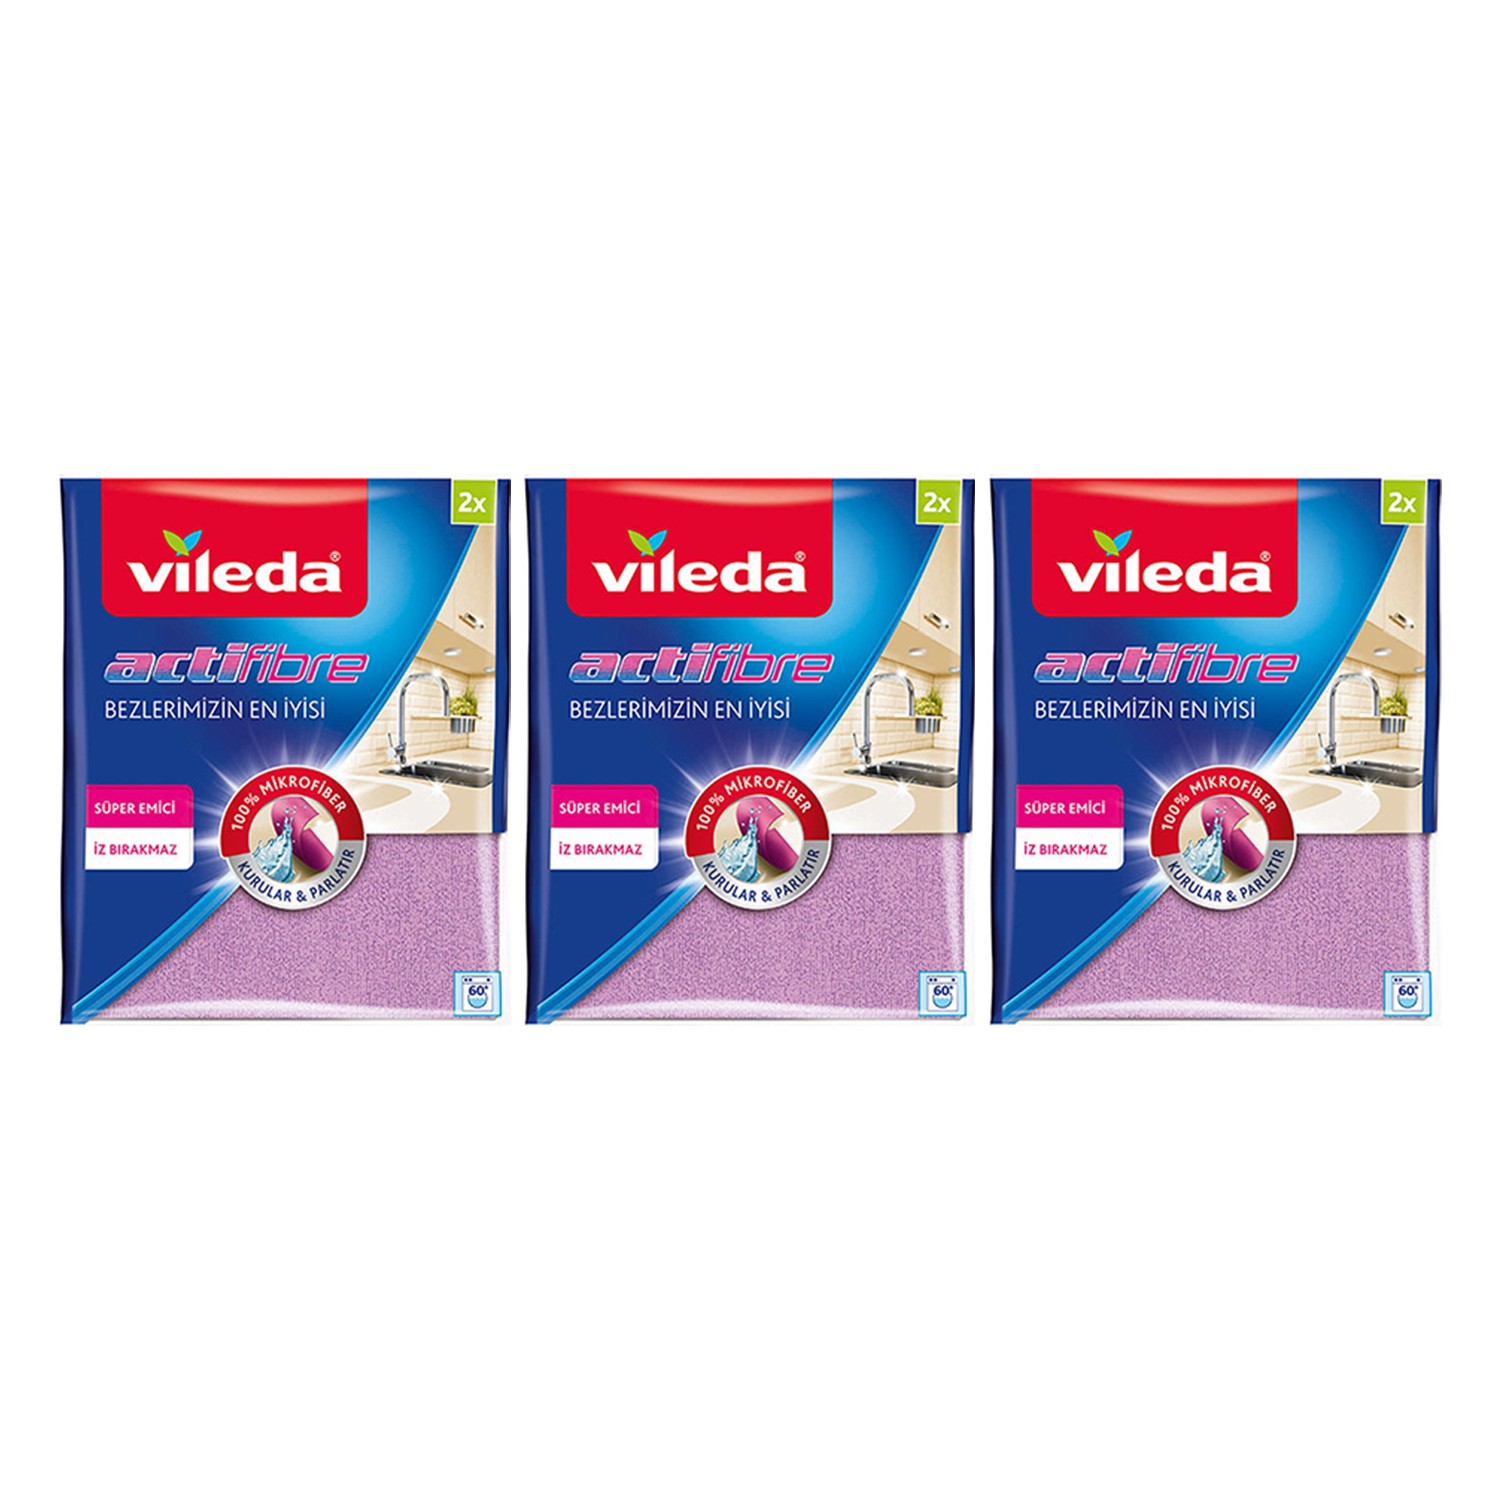 Vileda Actifibre 2'li Temizlik Bezi Fiyatları, Özellikleri ve Yorumları